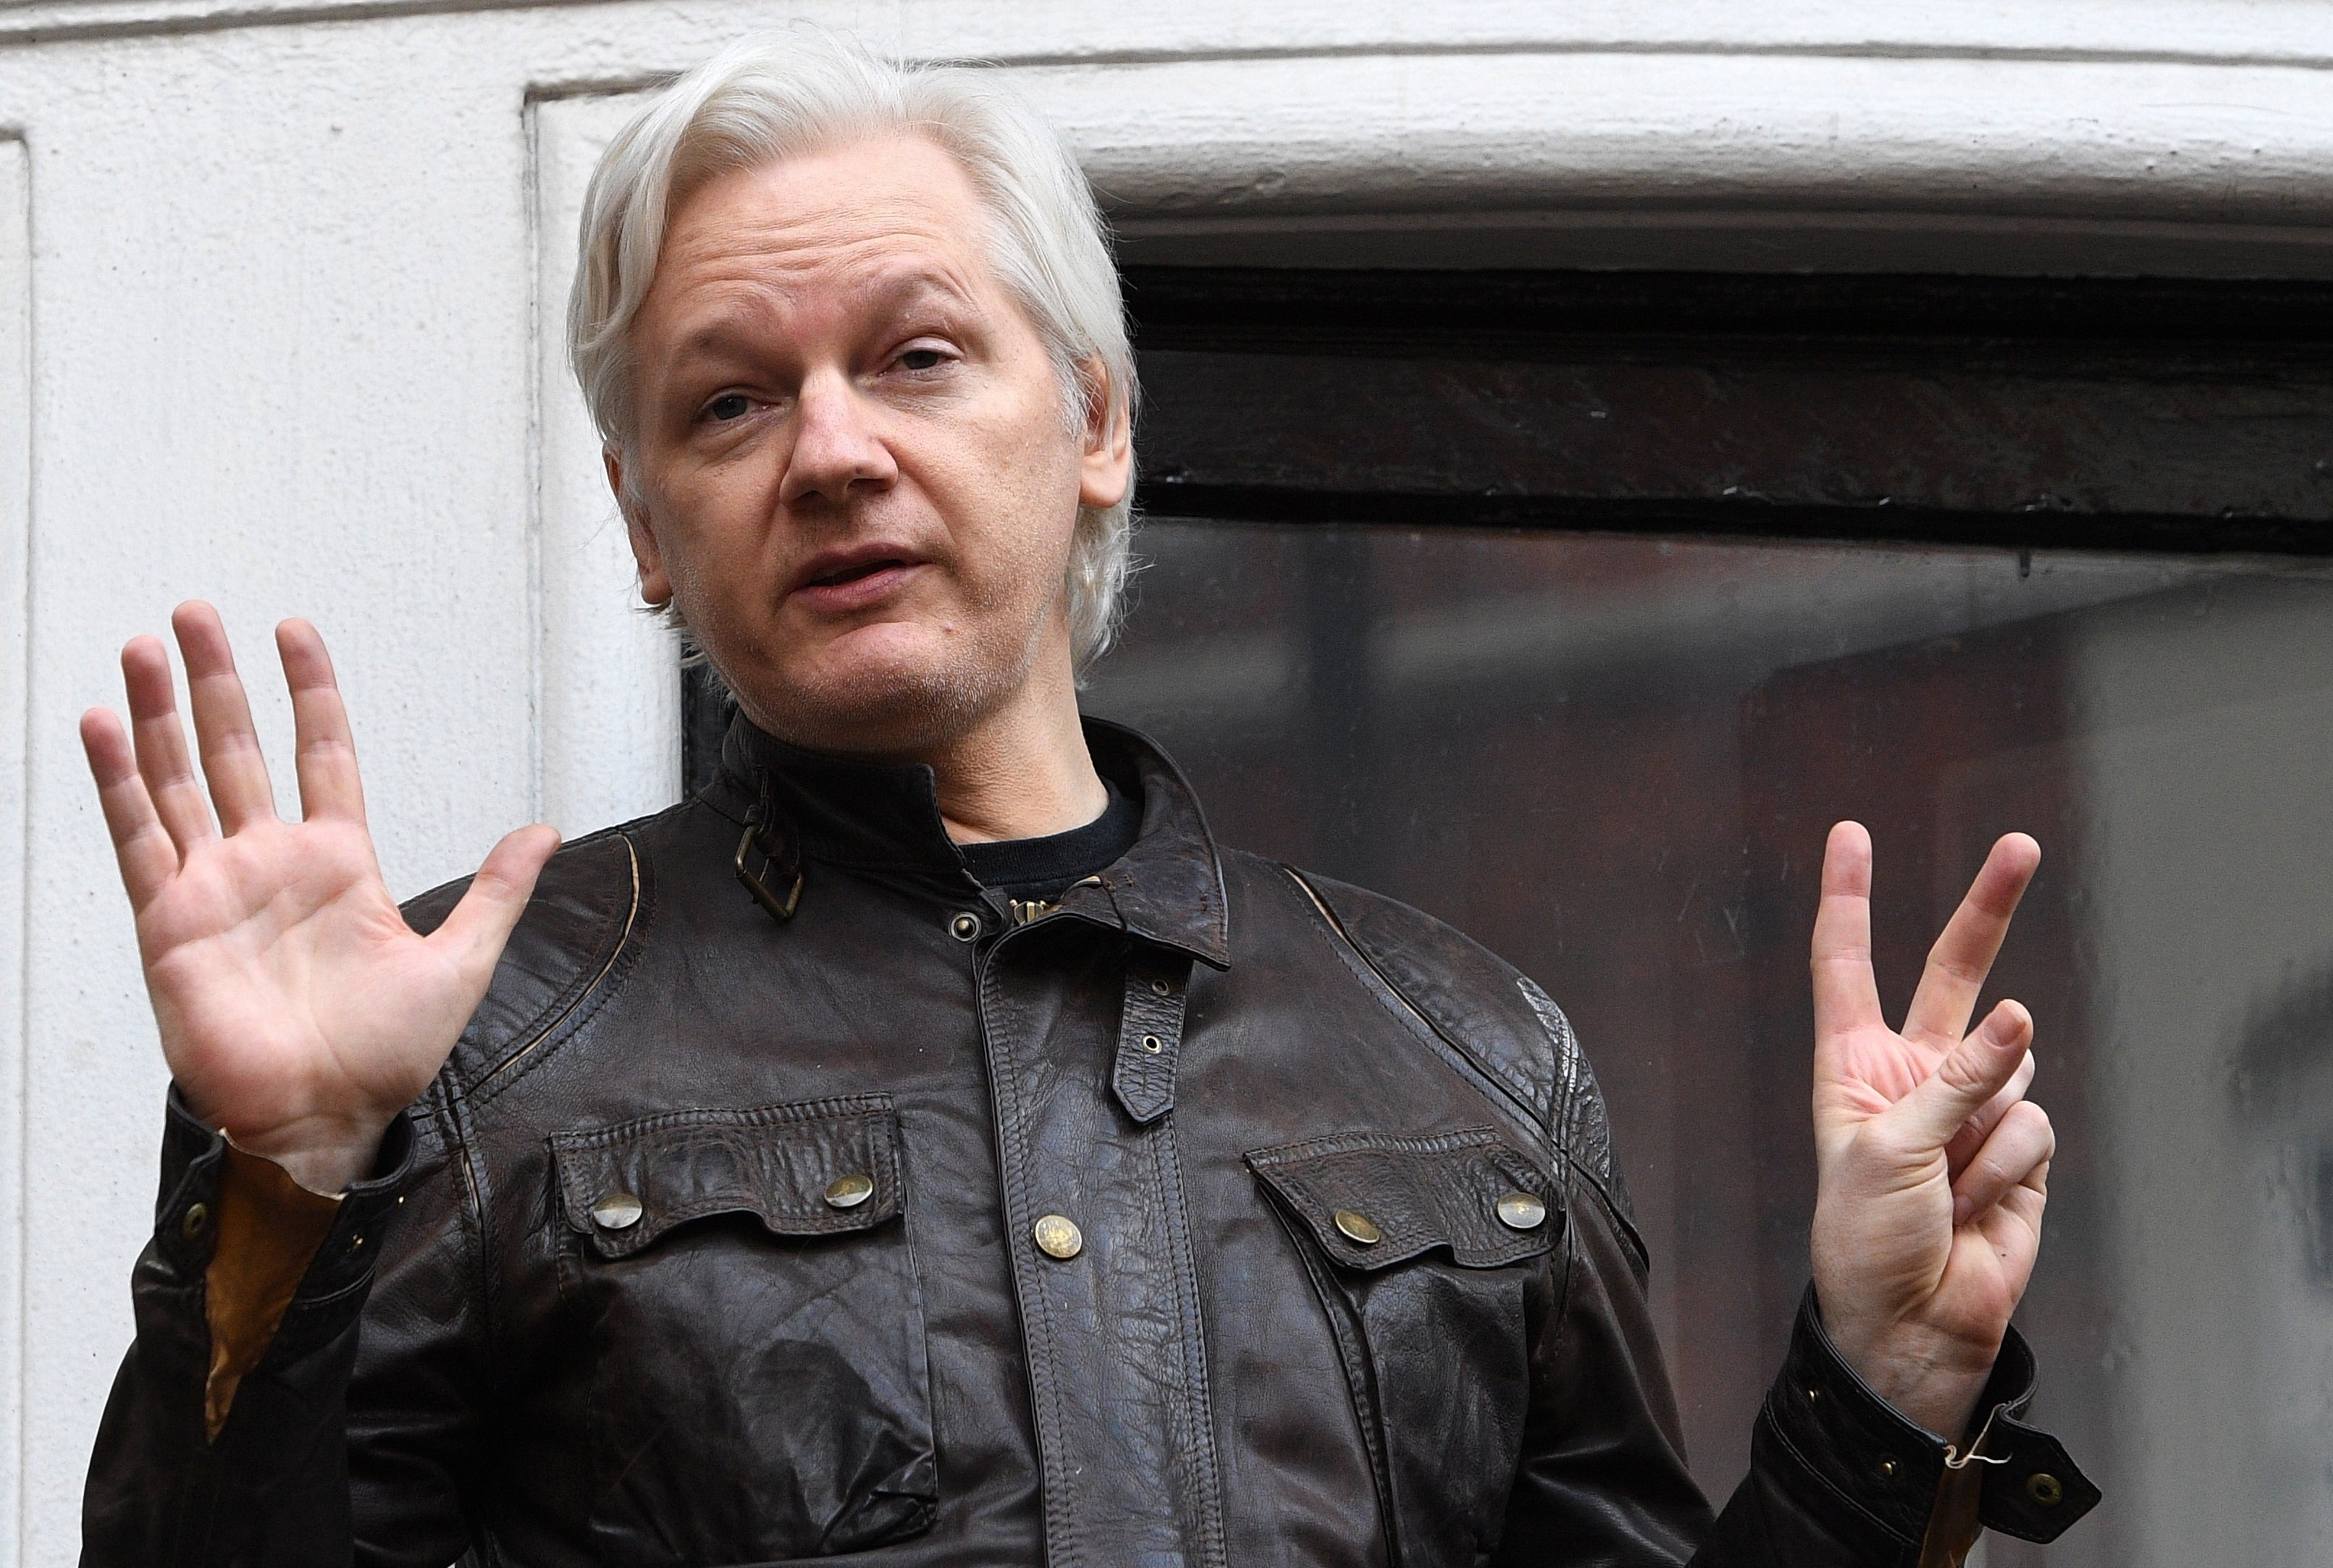 La defensa d'Assange alerta de "l'alt risc de suïcidi si és extradit" als EUA